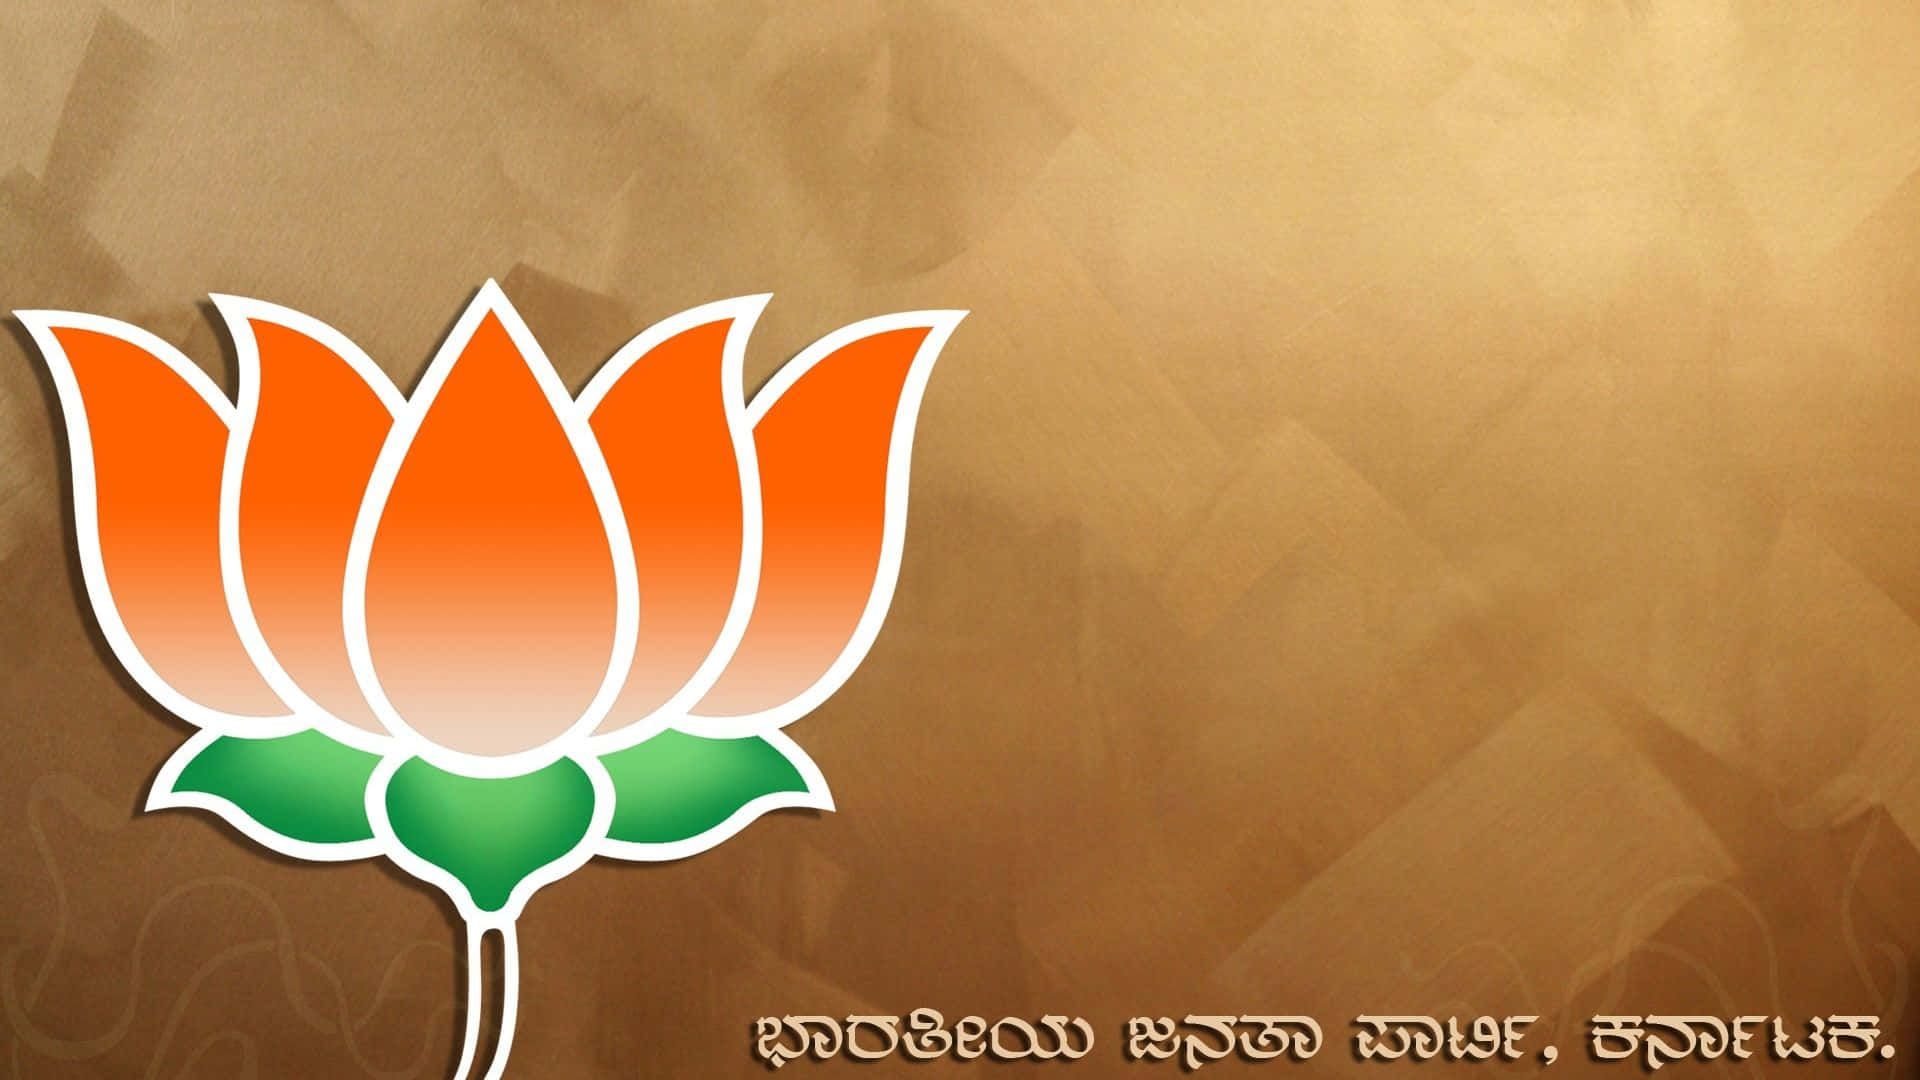 Bhartiya Janta party logo PNG image Download